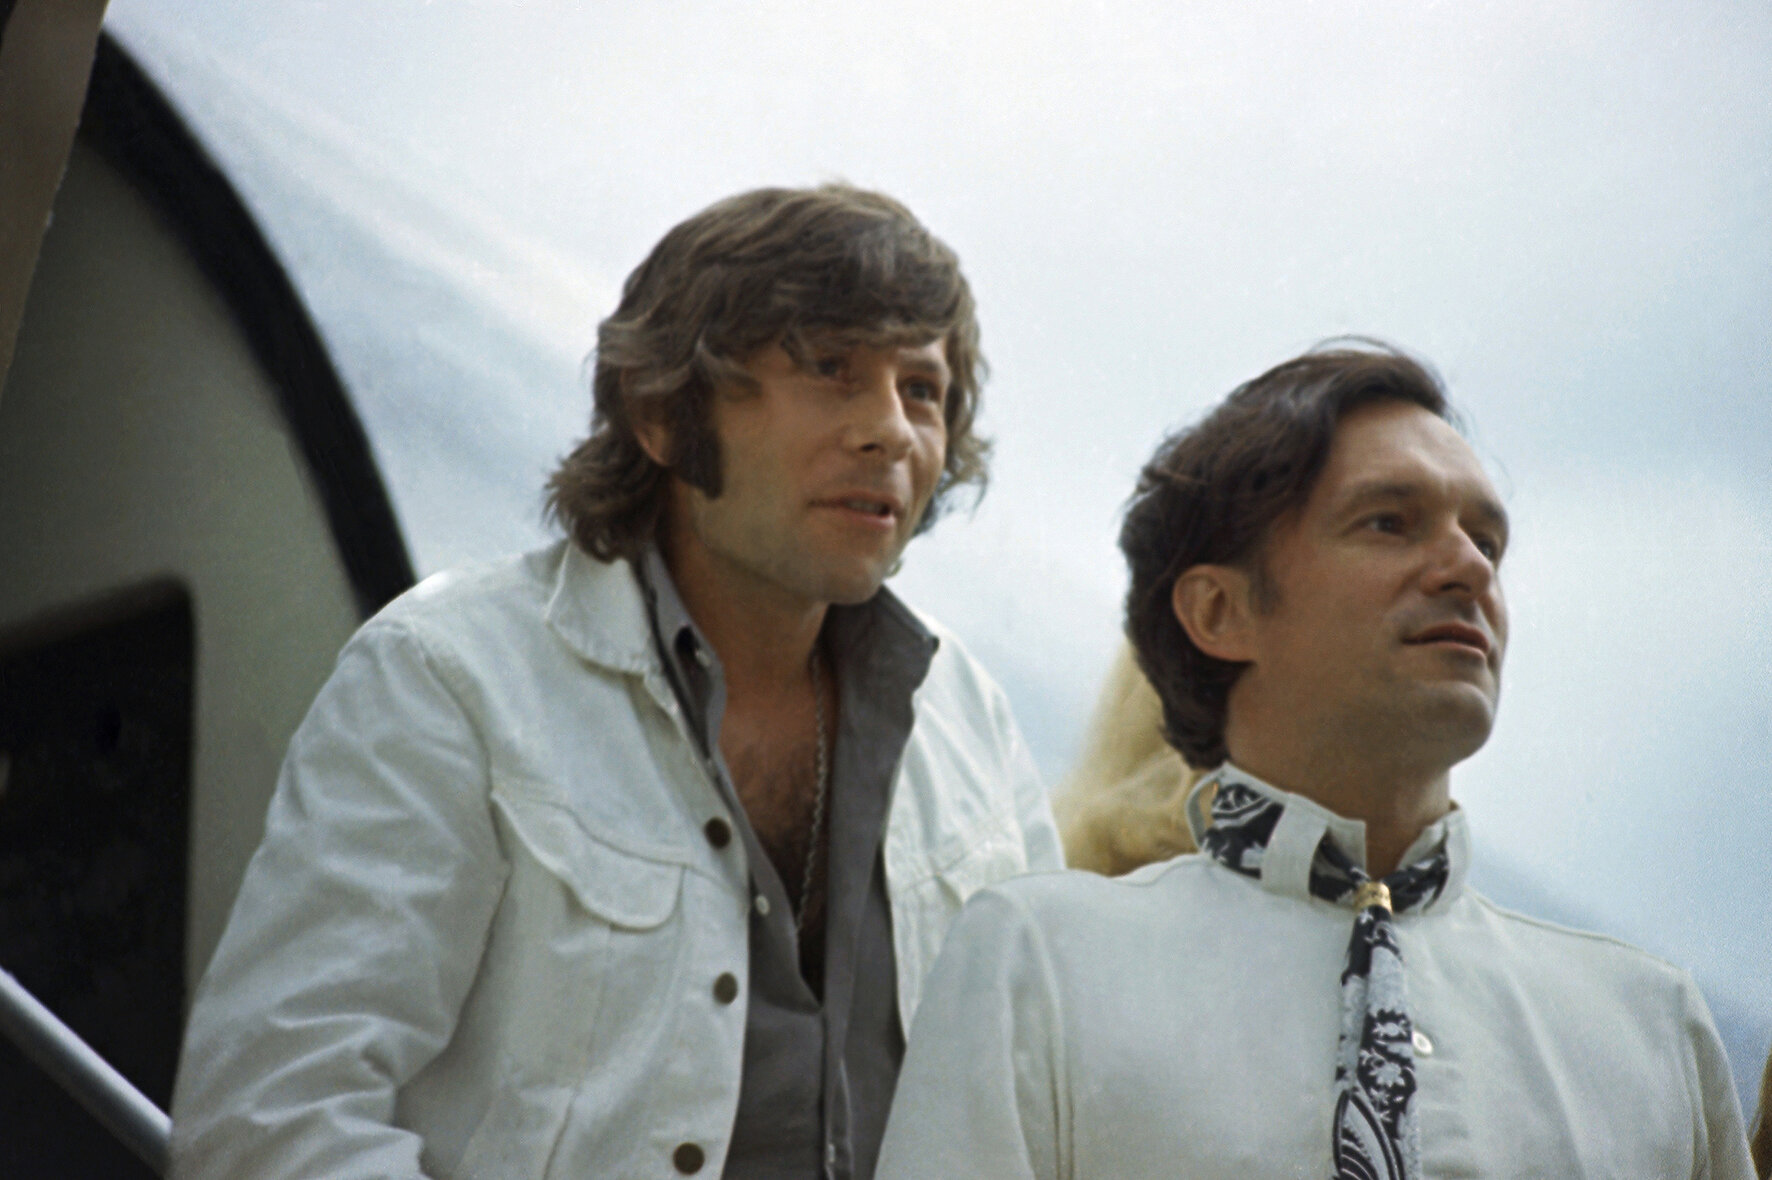 <p>Хью Хефнер с режиссером Романом Полански прилетели в Париж, август&nbsp;1970 года.</p>

<p>&nbsp;</p>